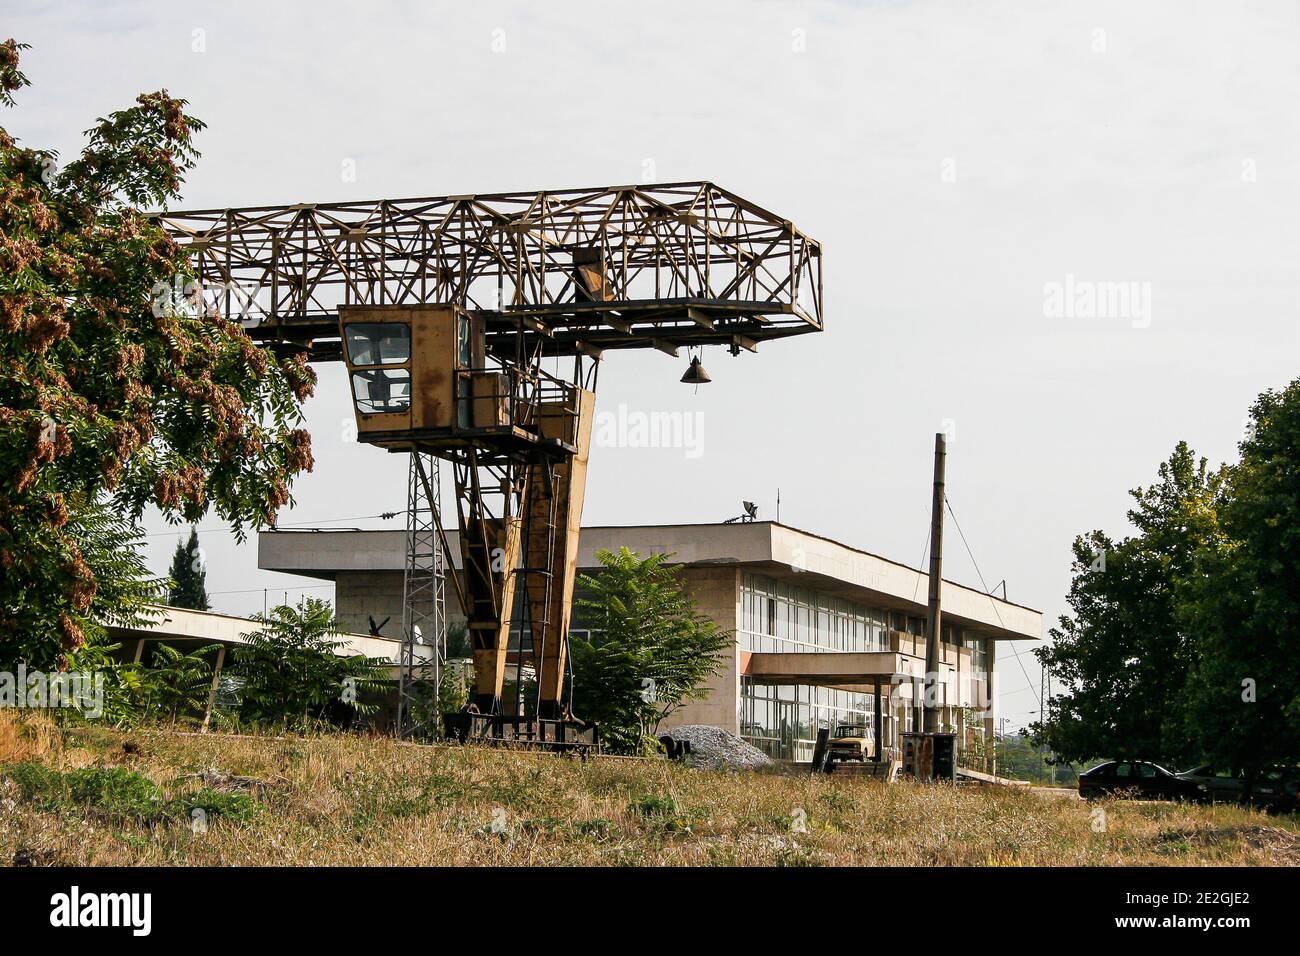 Alte rostigen Industrie-Kran auch als Portal oder bekannt Brückenkran an einem Bahnhof in Bulgarien Stockfoto